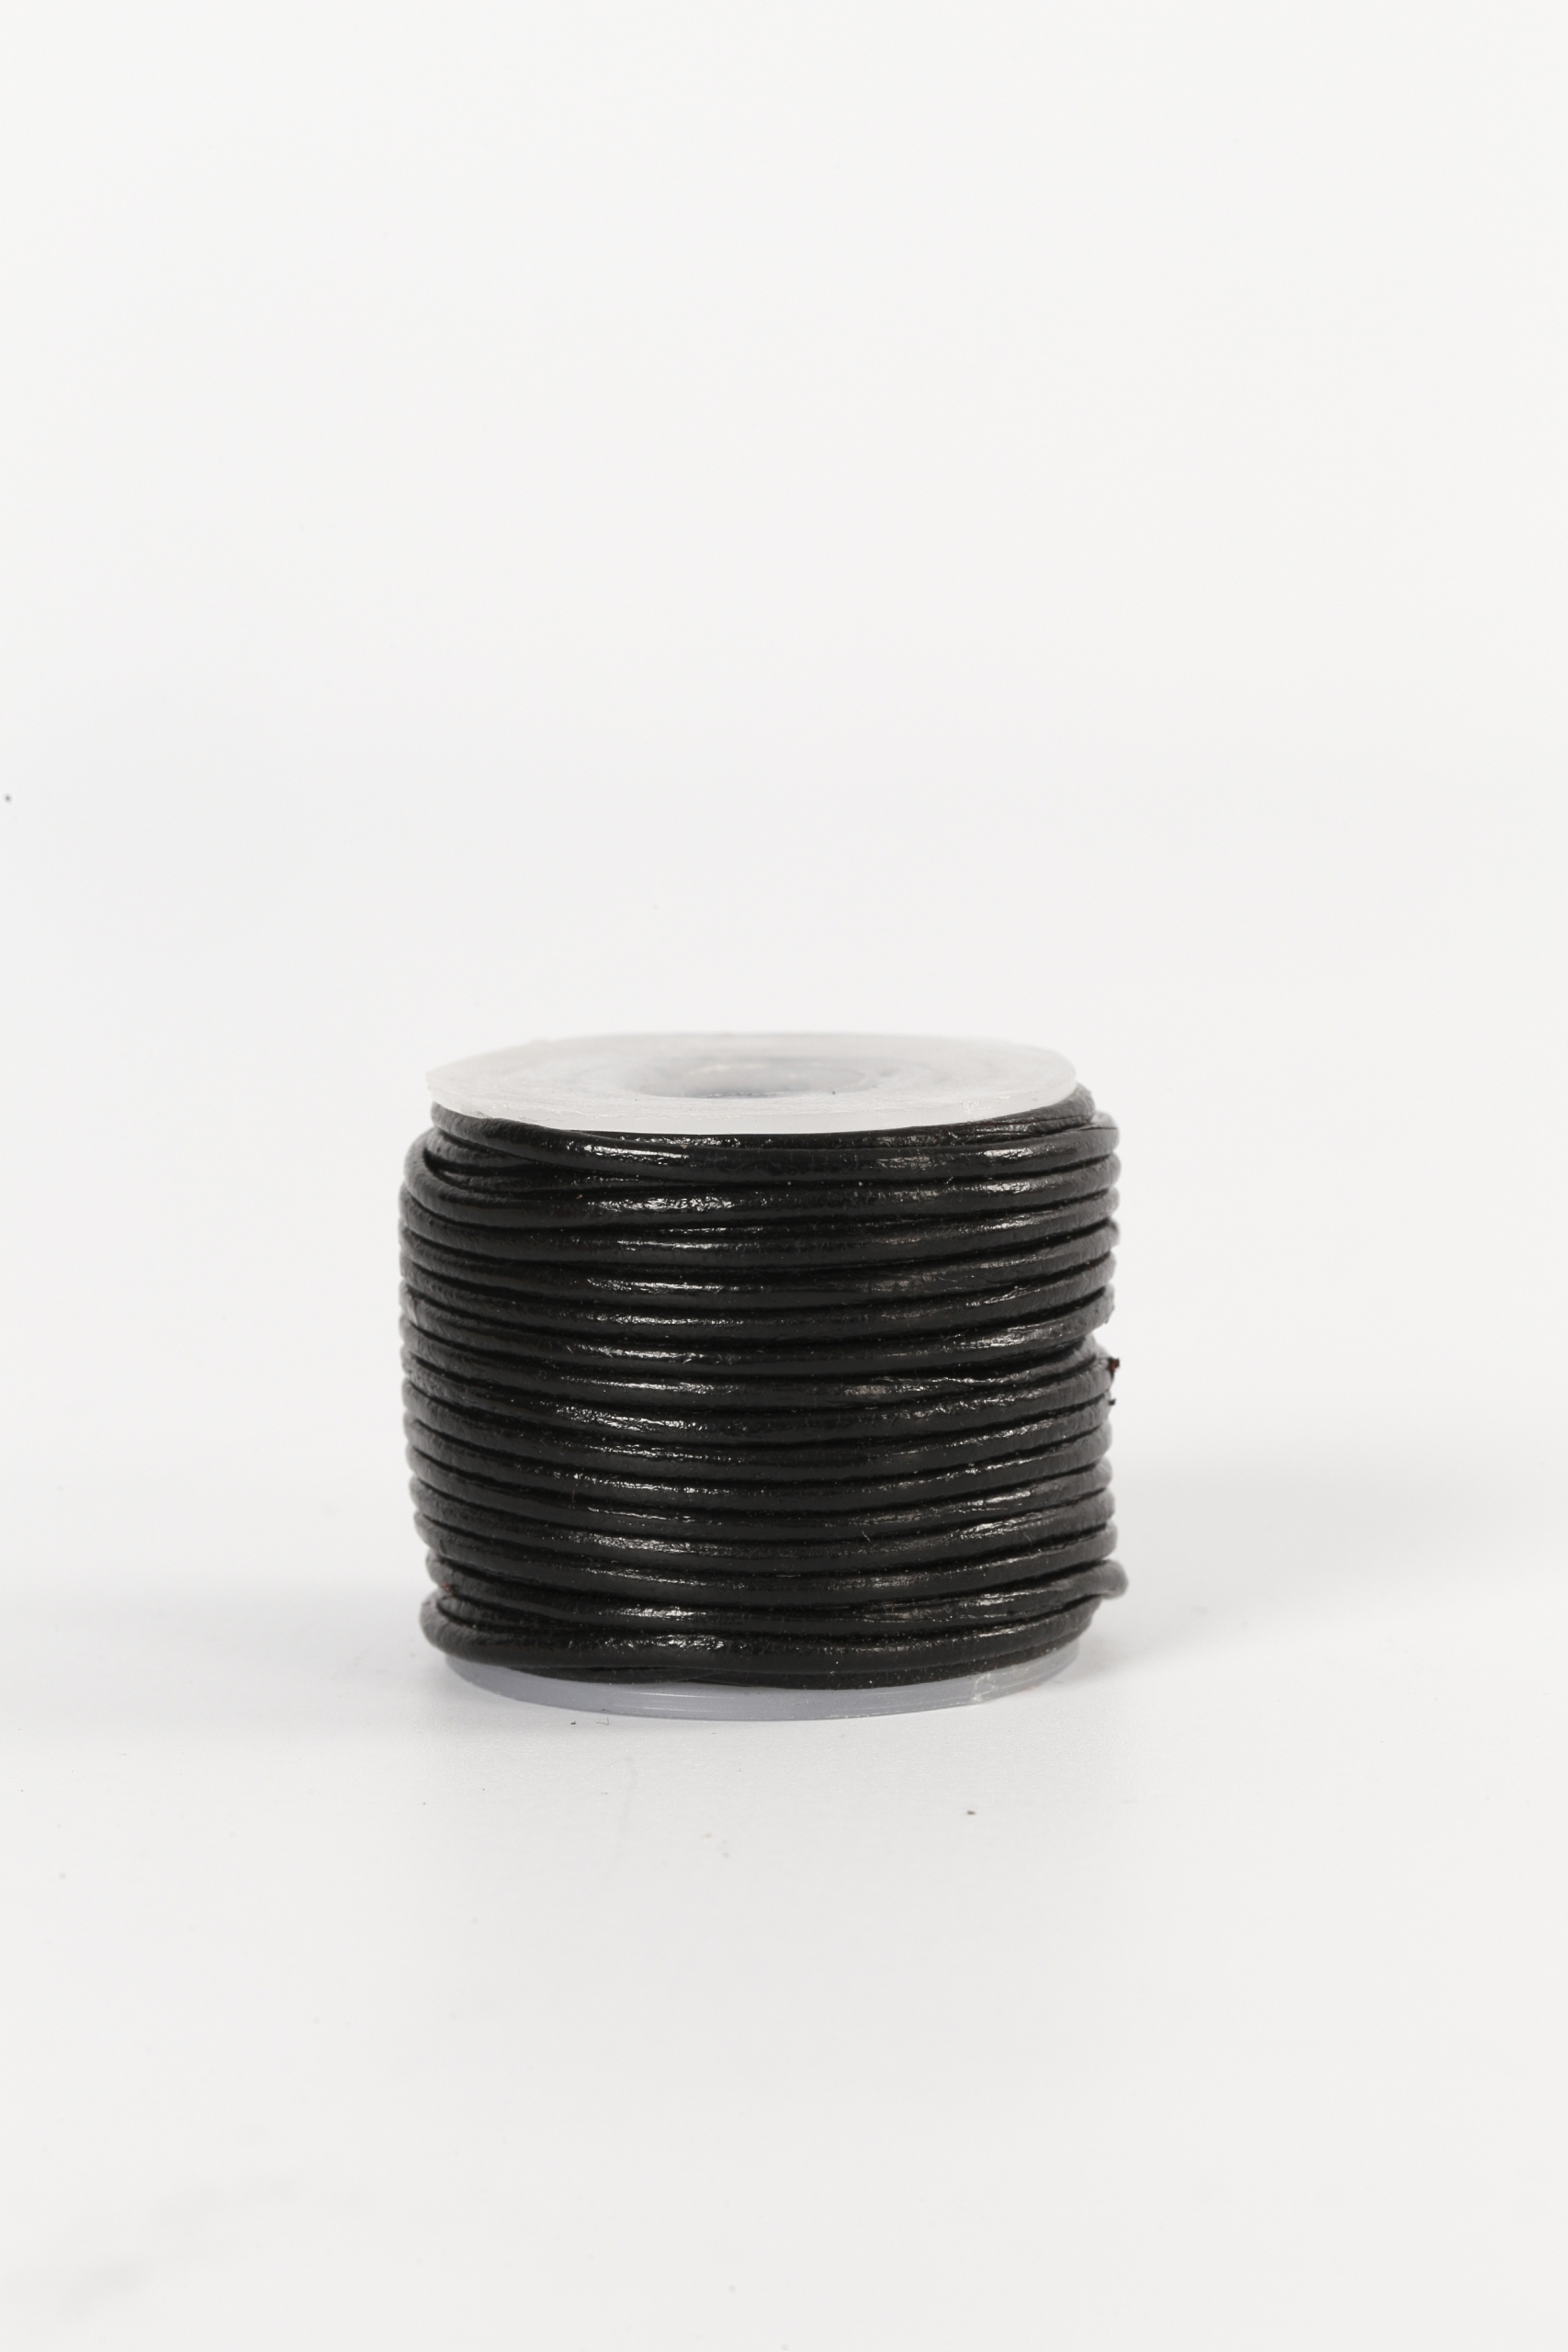 Lederband, 1 mm, schwarz, 10 m